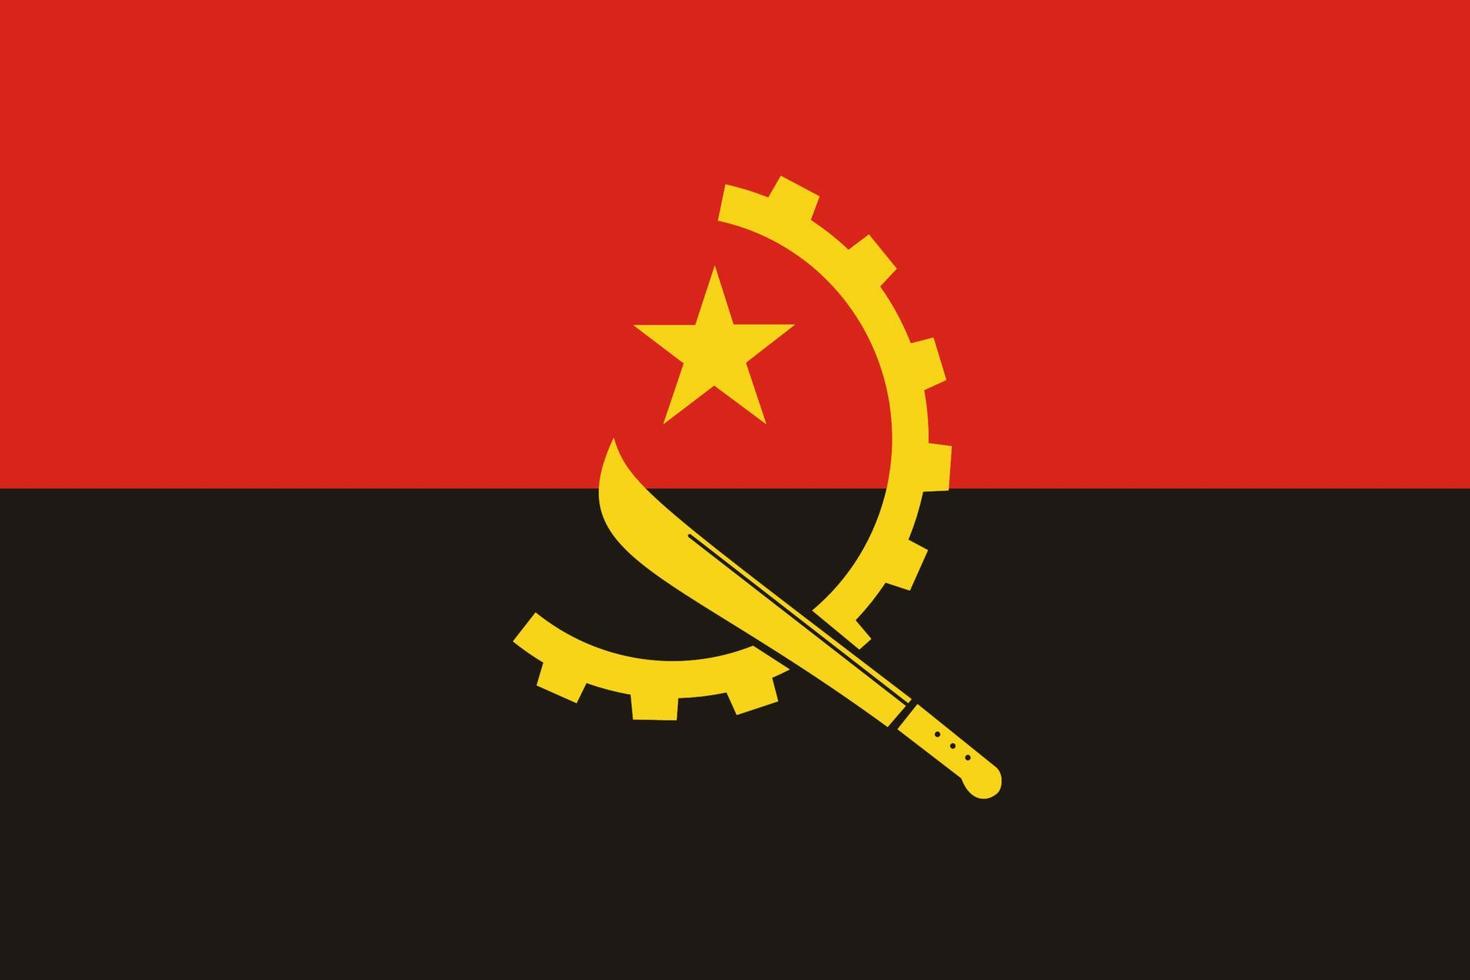 angola Facile drapeau correct taille, proportion, couleurs. vecteur